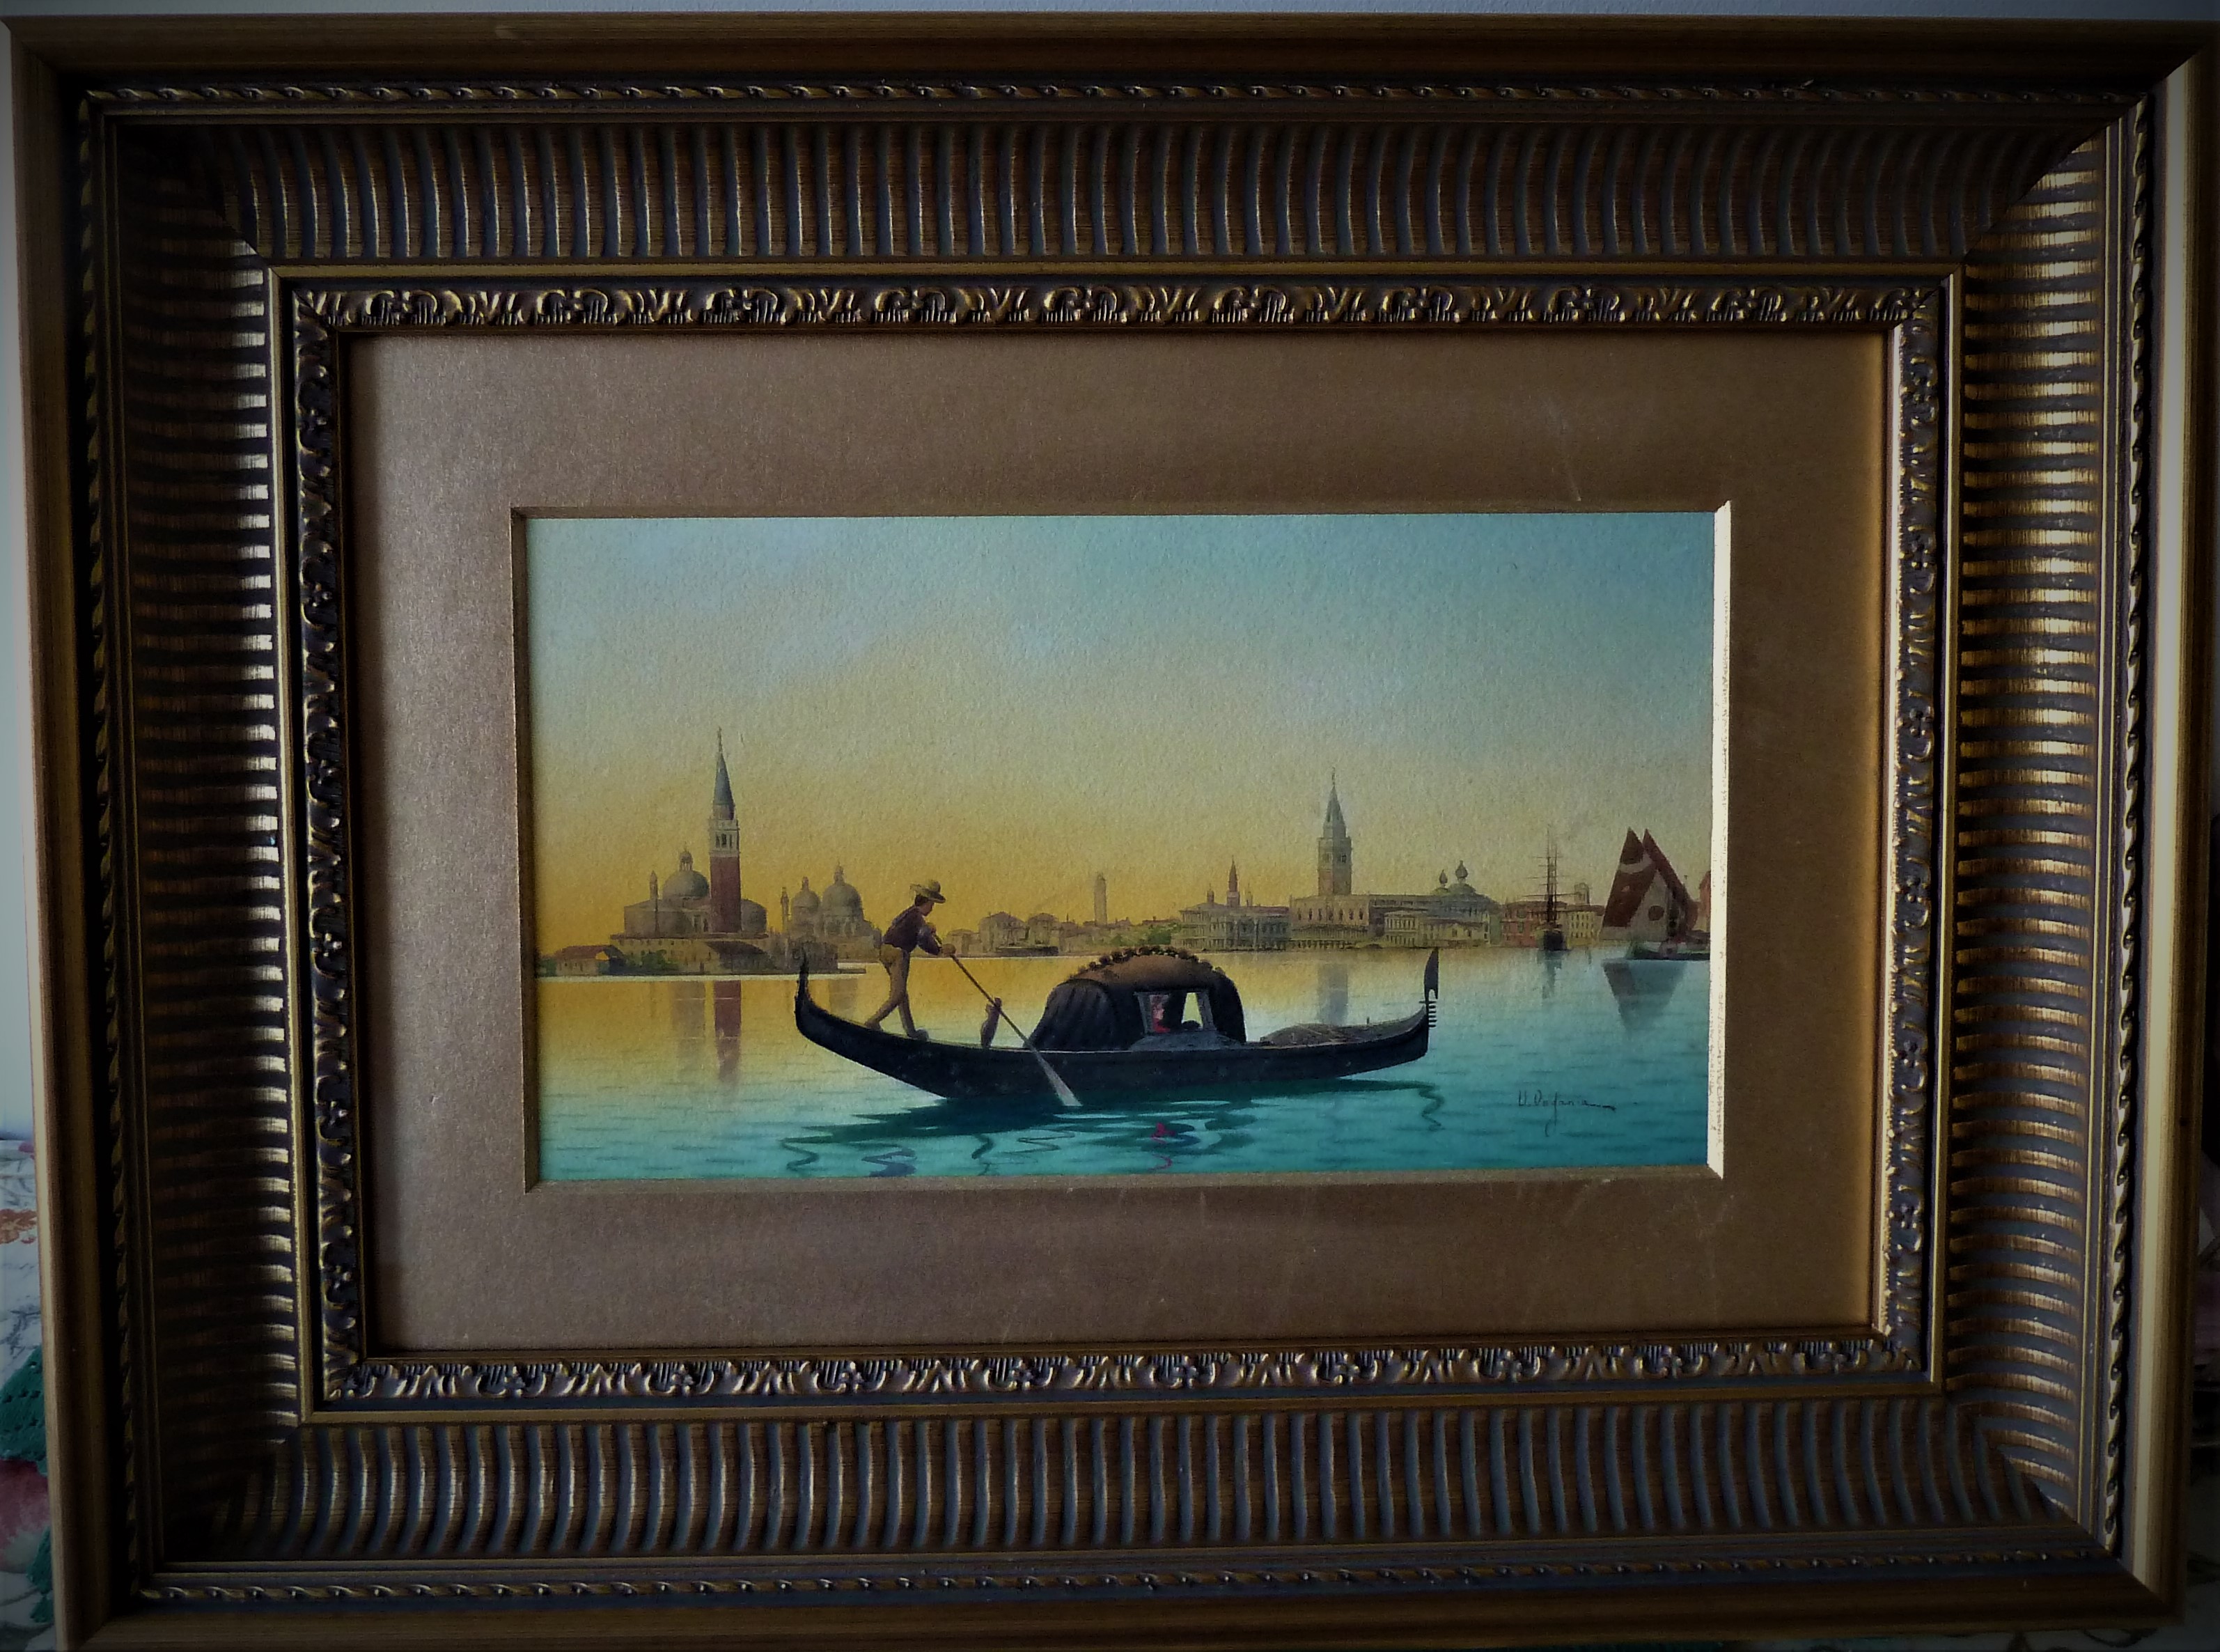 Umberto Ongania (1867-1942) Italian, Venice Panorama watercolour, signed (circa 1887).
Exhibited in 1887 at Venice ,La Porta Della Carta.

